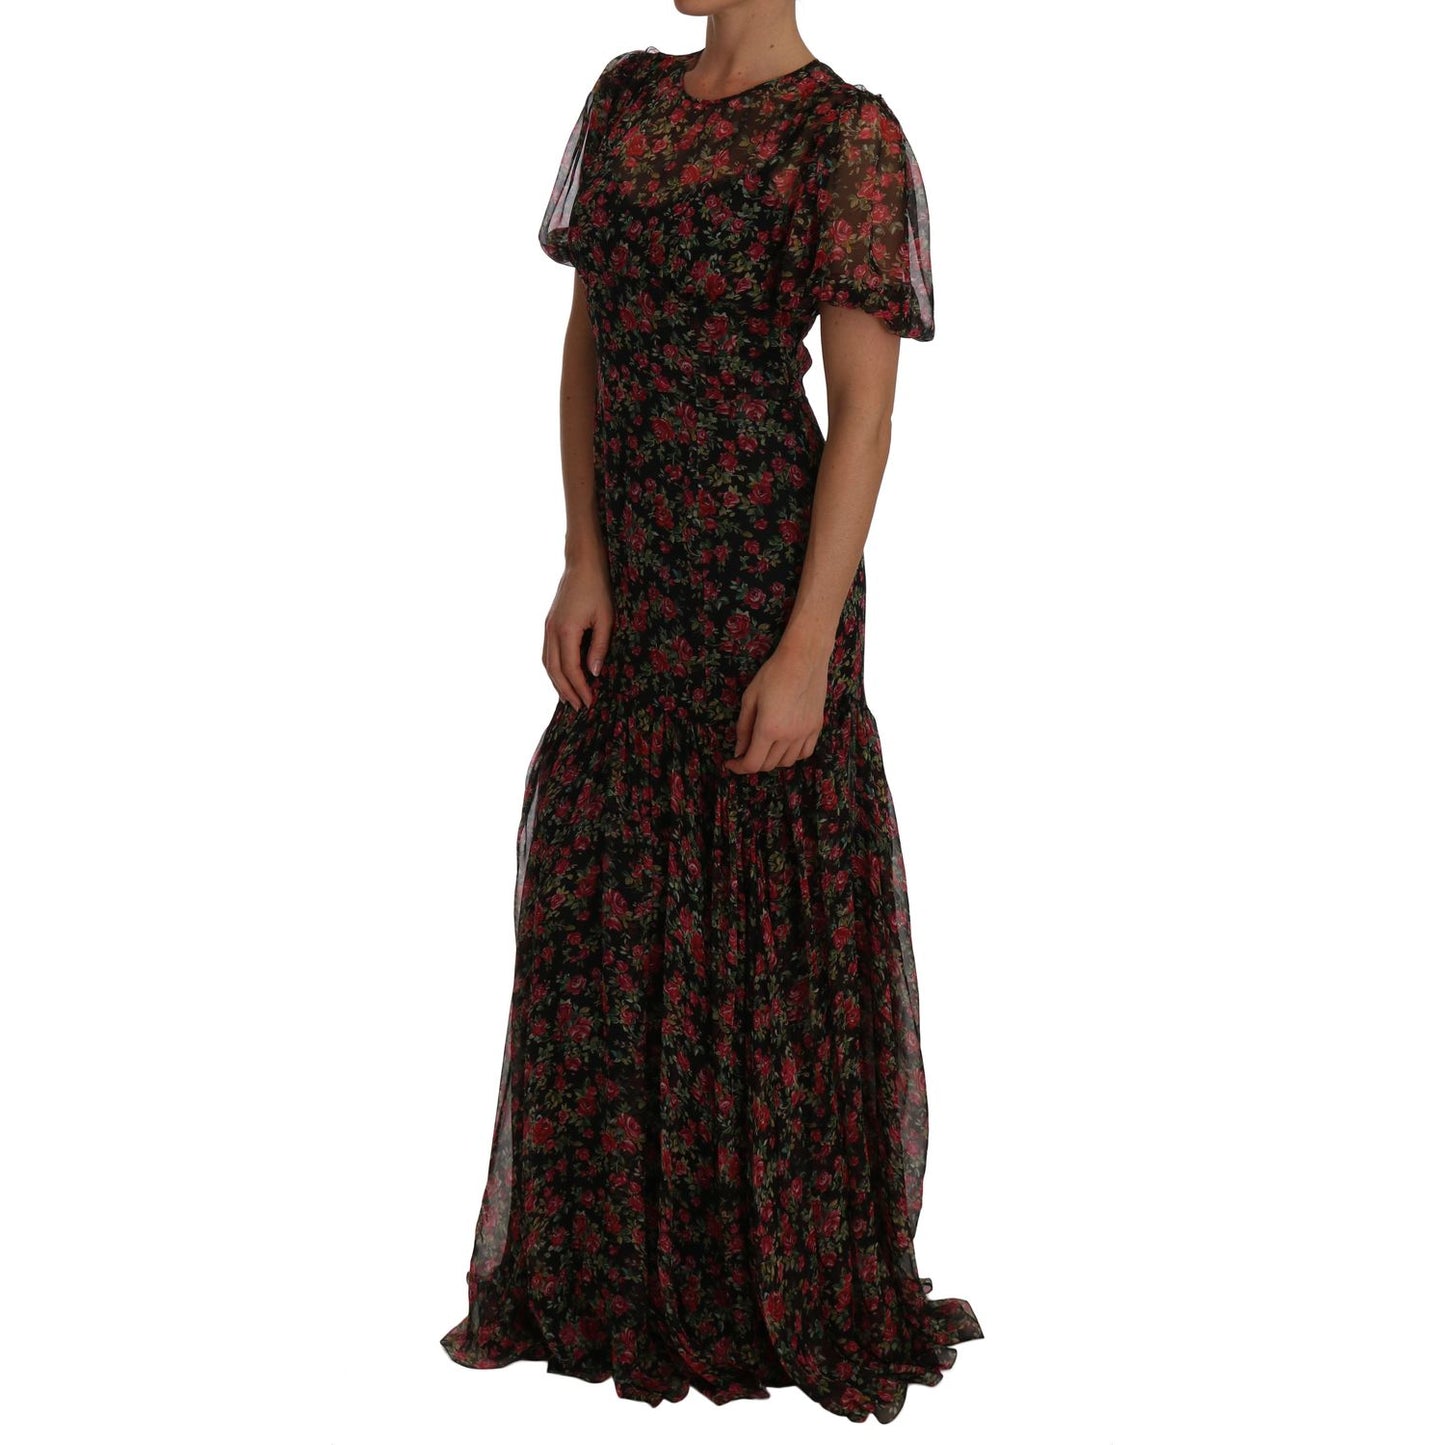 Dolce & Gabbana Elegant Floral A-Line Silk Dress black-floral-roses-a-line-shift-gown IMG_4347.jpg